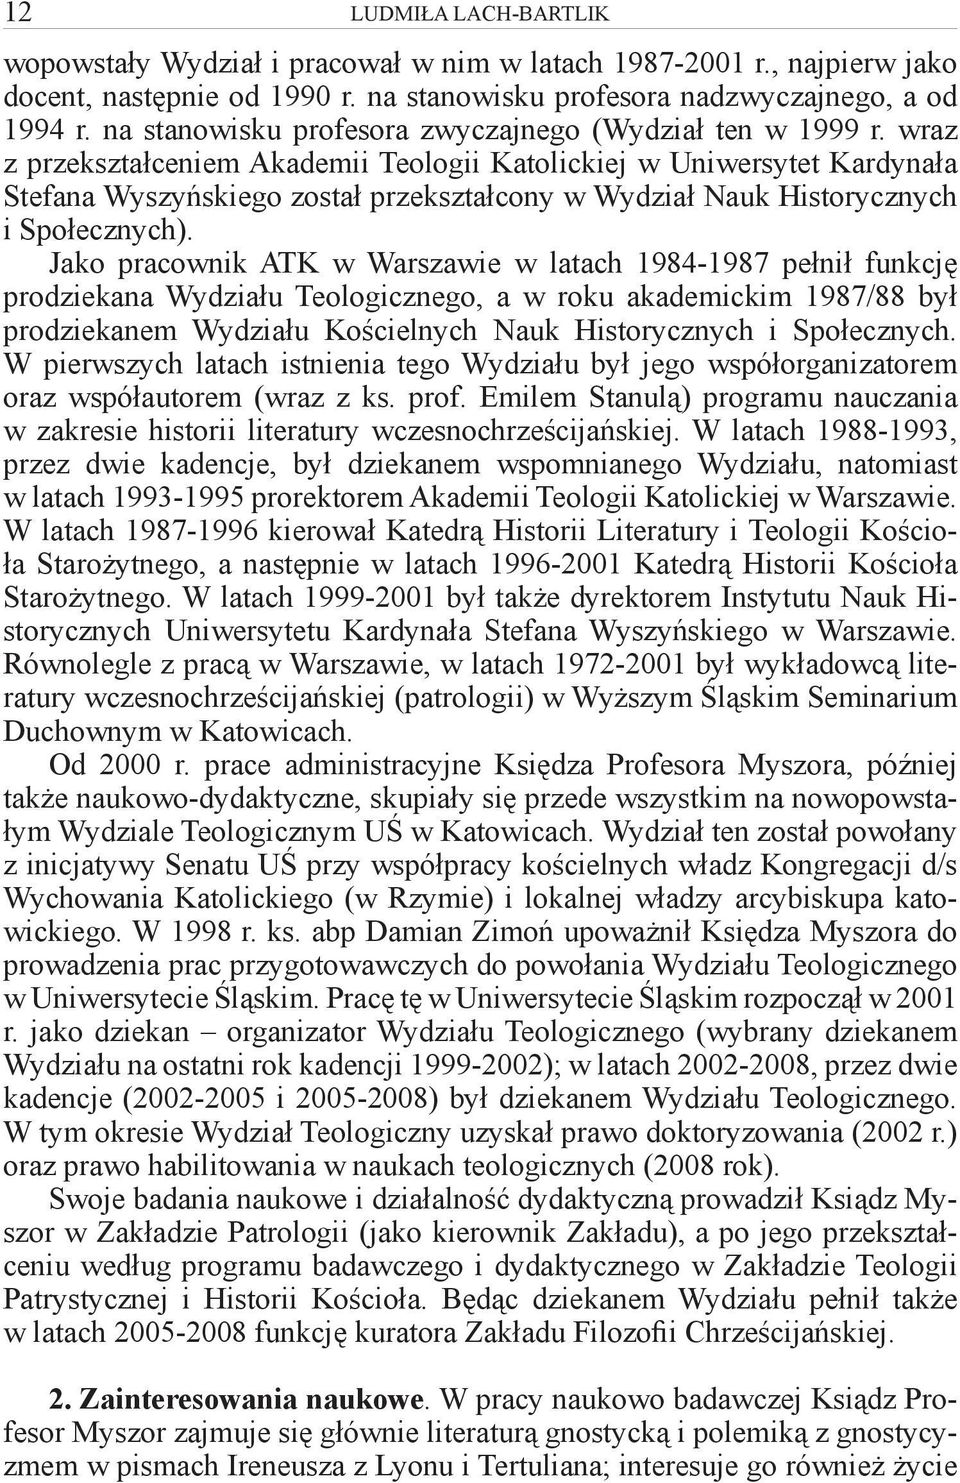 wraz z przekształceniem Akademii Teologii Katolickiej w Uniwersytet Kardynała Stefana Wyszyńskiego został przekształcony w Wydział Nauk Historycznych i Społecznych).